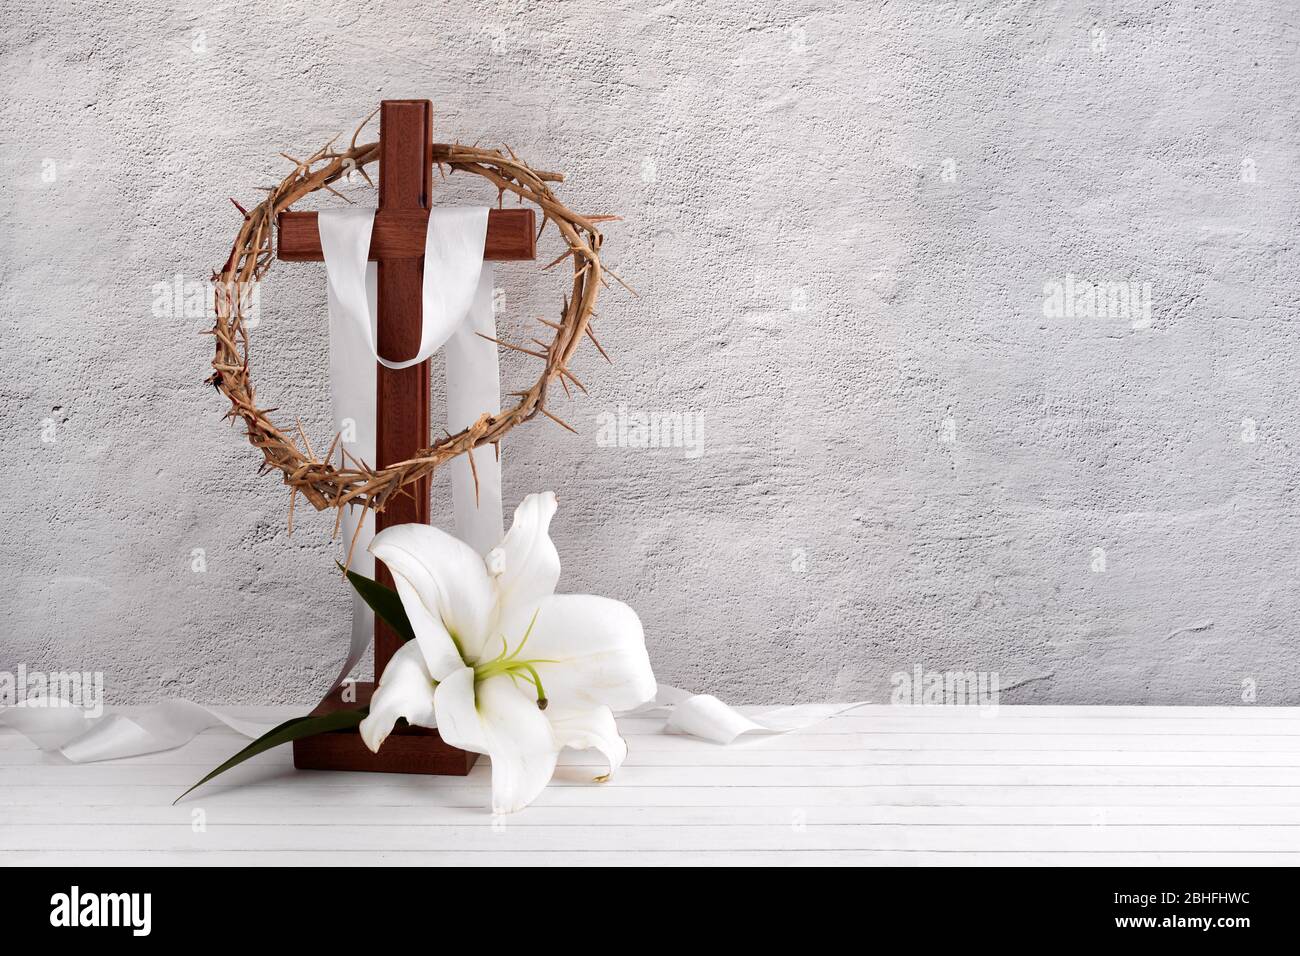 Composizione con corona di spine, croce di legno e giglio su fondo chiaro Foto Stock